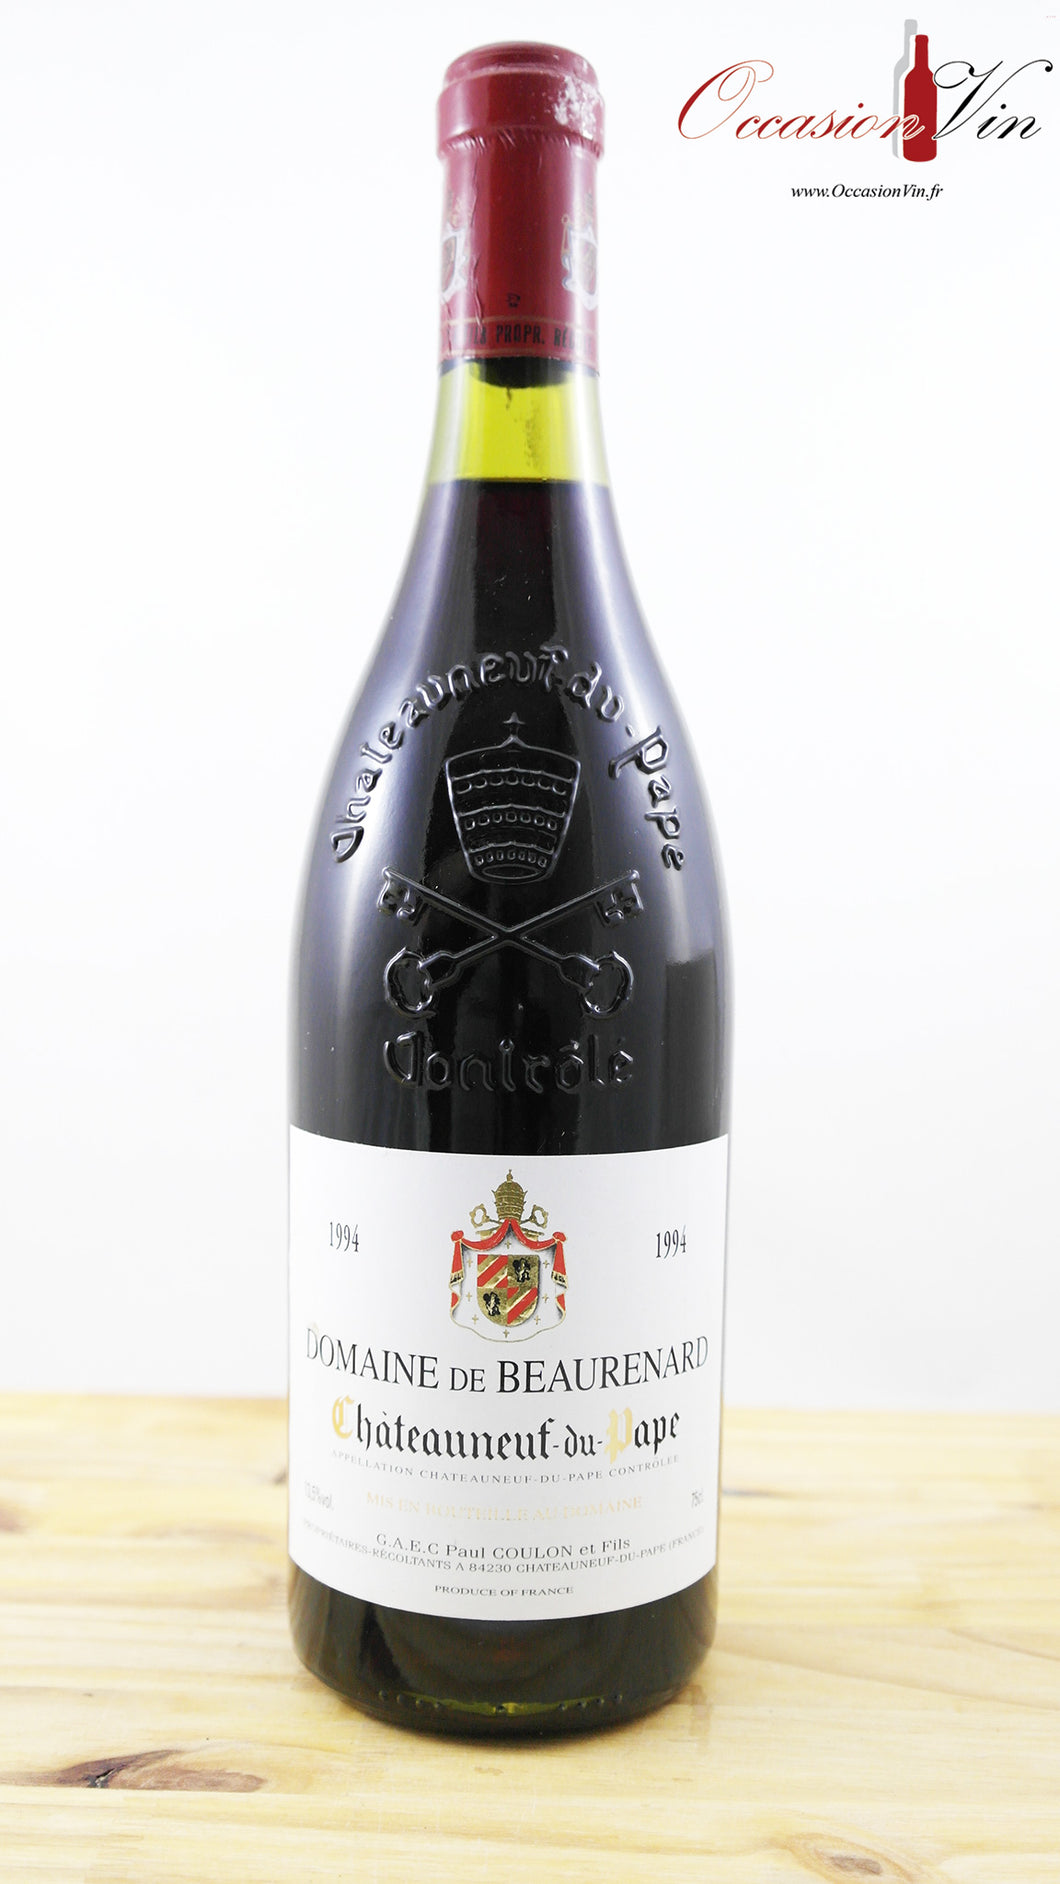 Domaine de Beaurenard Vin 1994